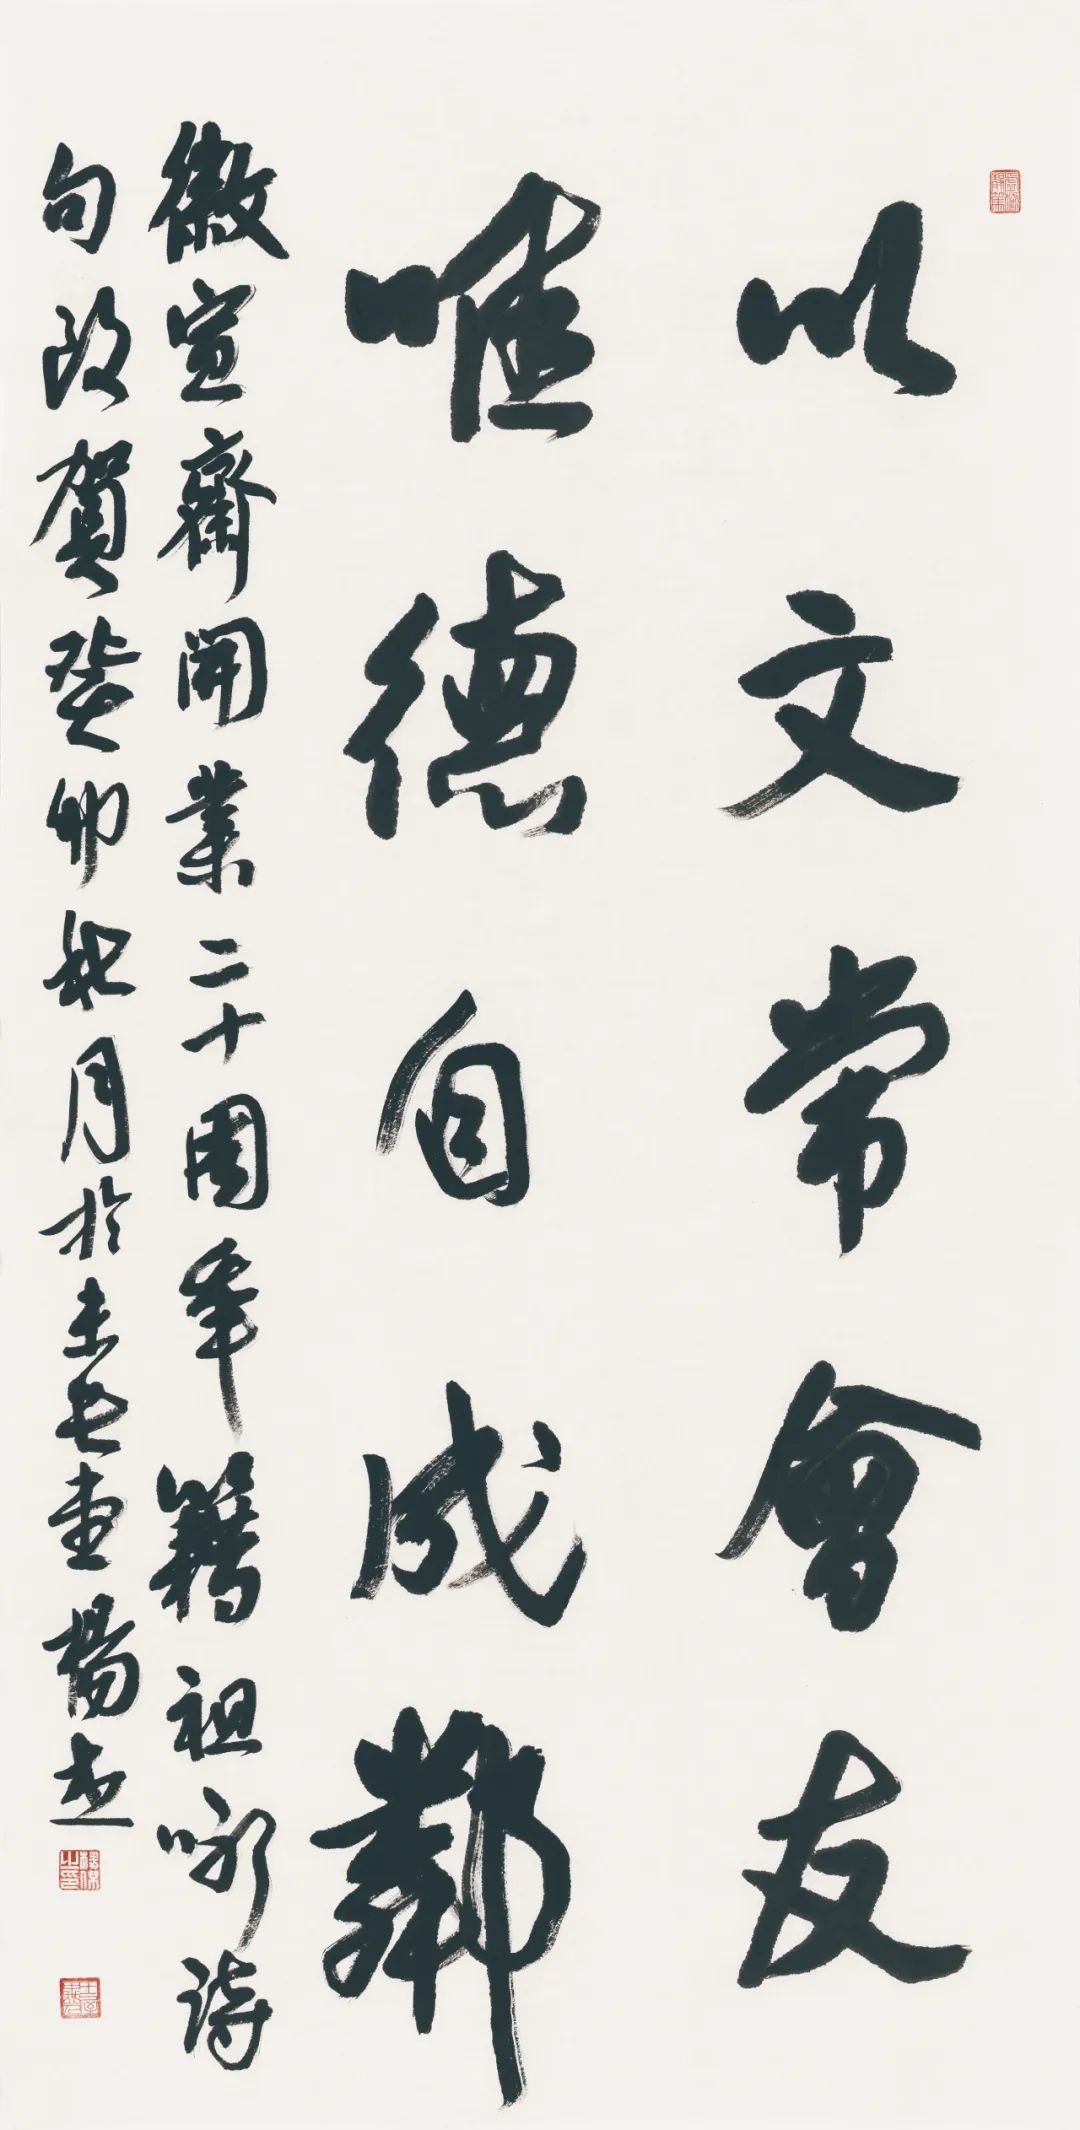 藏·展览丨纸笺传情，笔墨放歌——河南书法名家邀请展 12月24日开幕(图3)